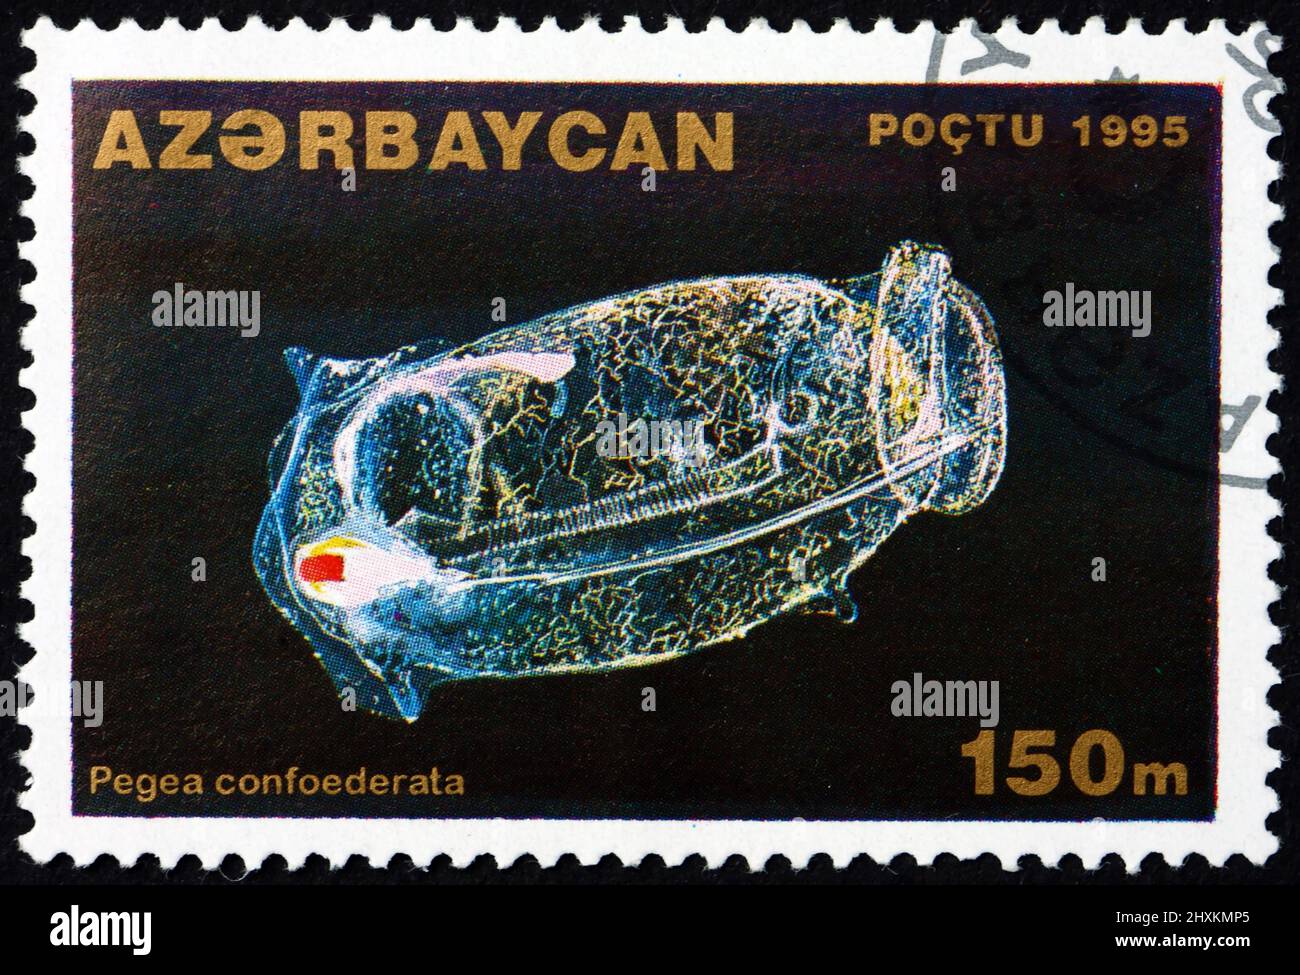 AZERBAIGIAN - CIRCA 1995: Un francobollo stampato in Azerbaigian mostra pegea confoederata, un animale invertebrato marino, circa 1995 Foto Stock